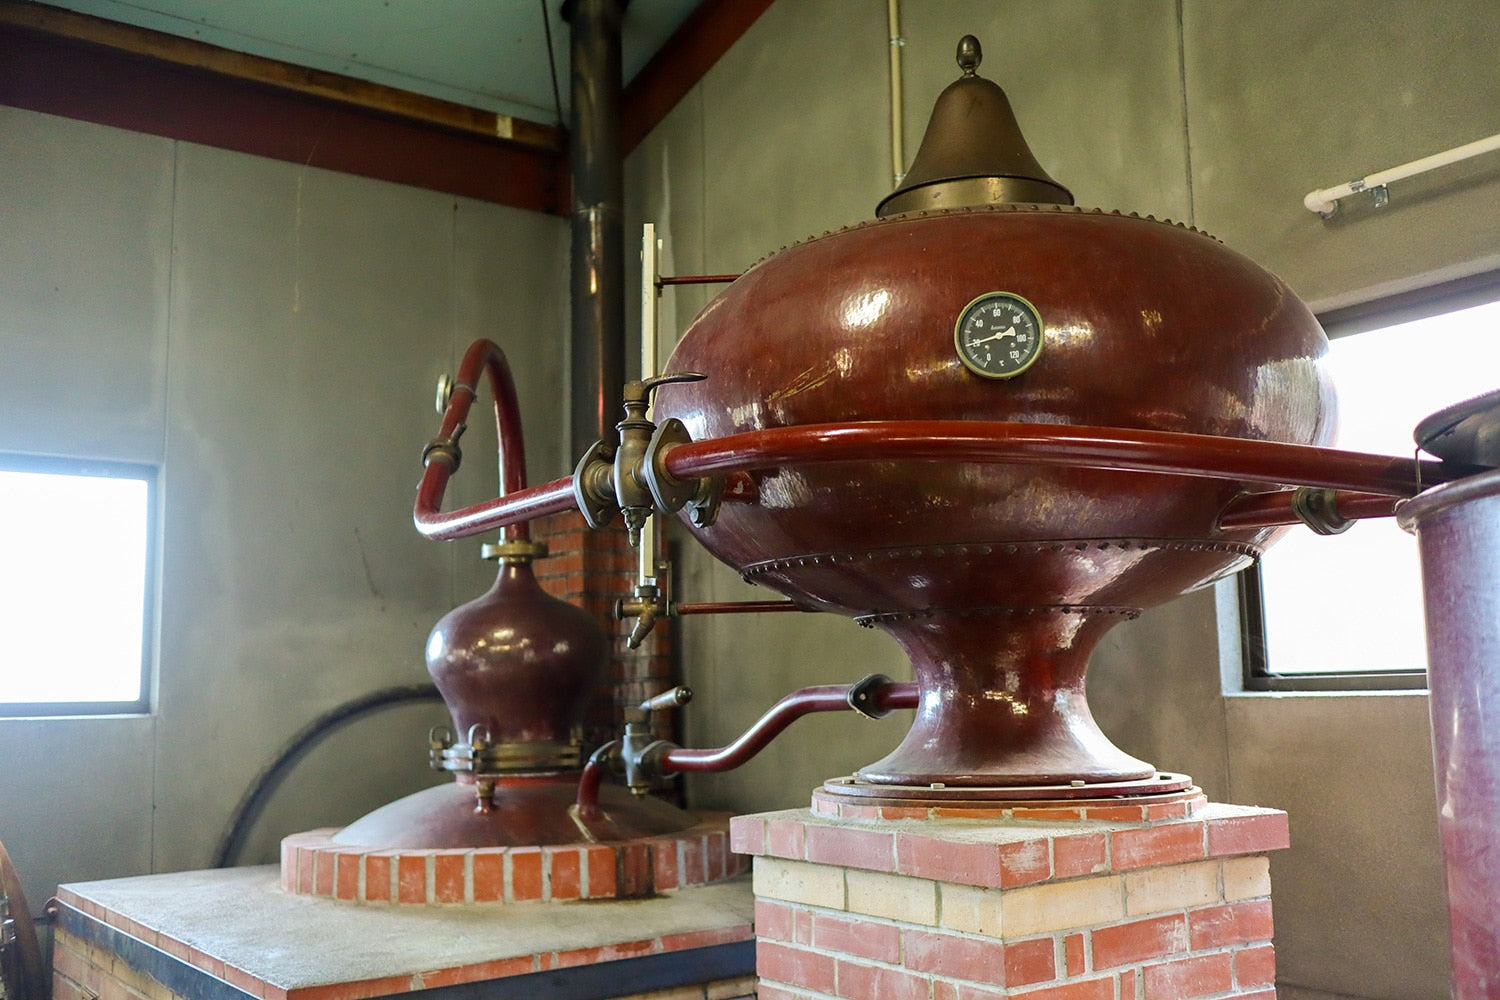 マール・ド・キザンの生産のための蒸留器。機山洋酒では、搾りかすに水分と糖を加え、それを蒸留することで製造している。